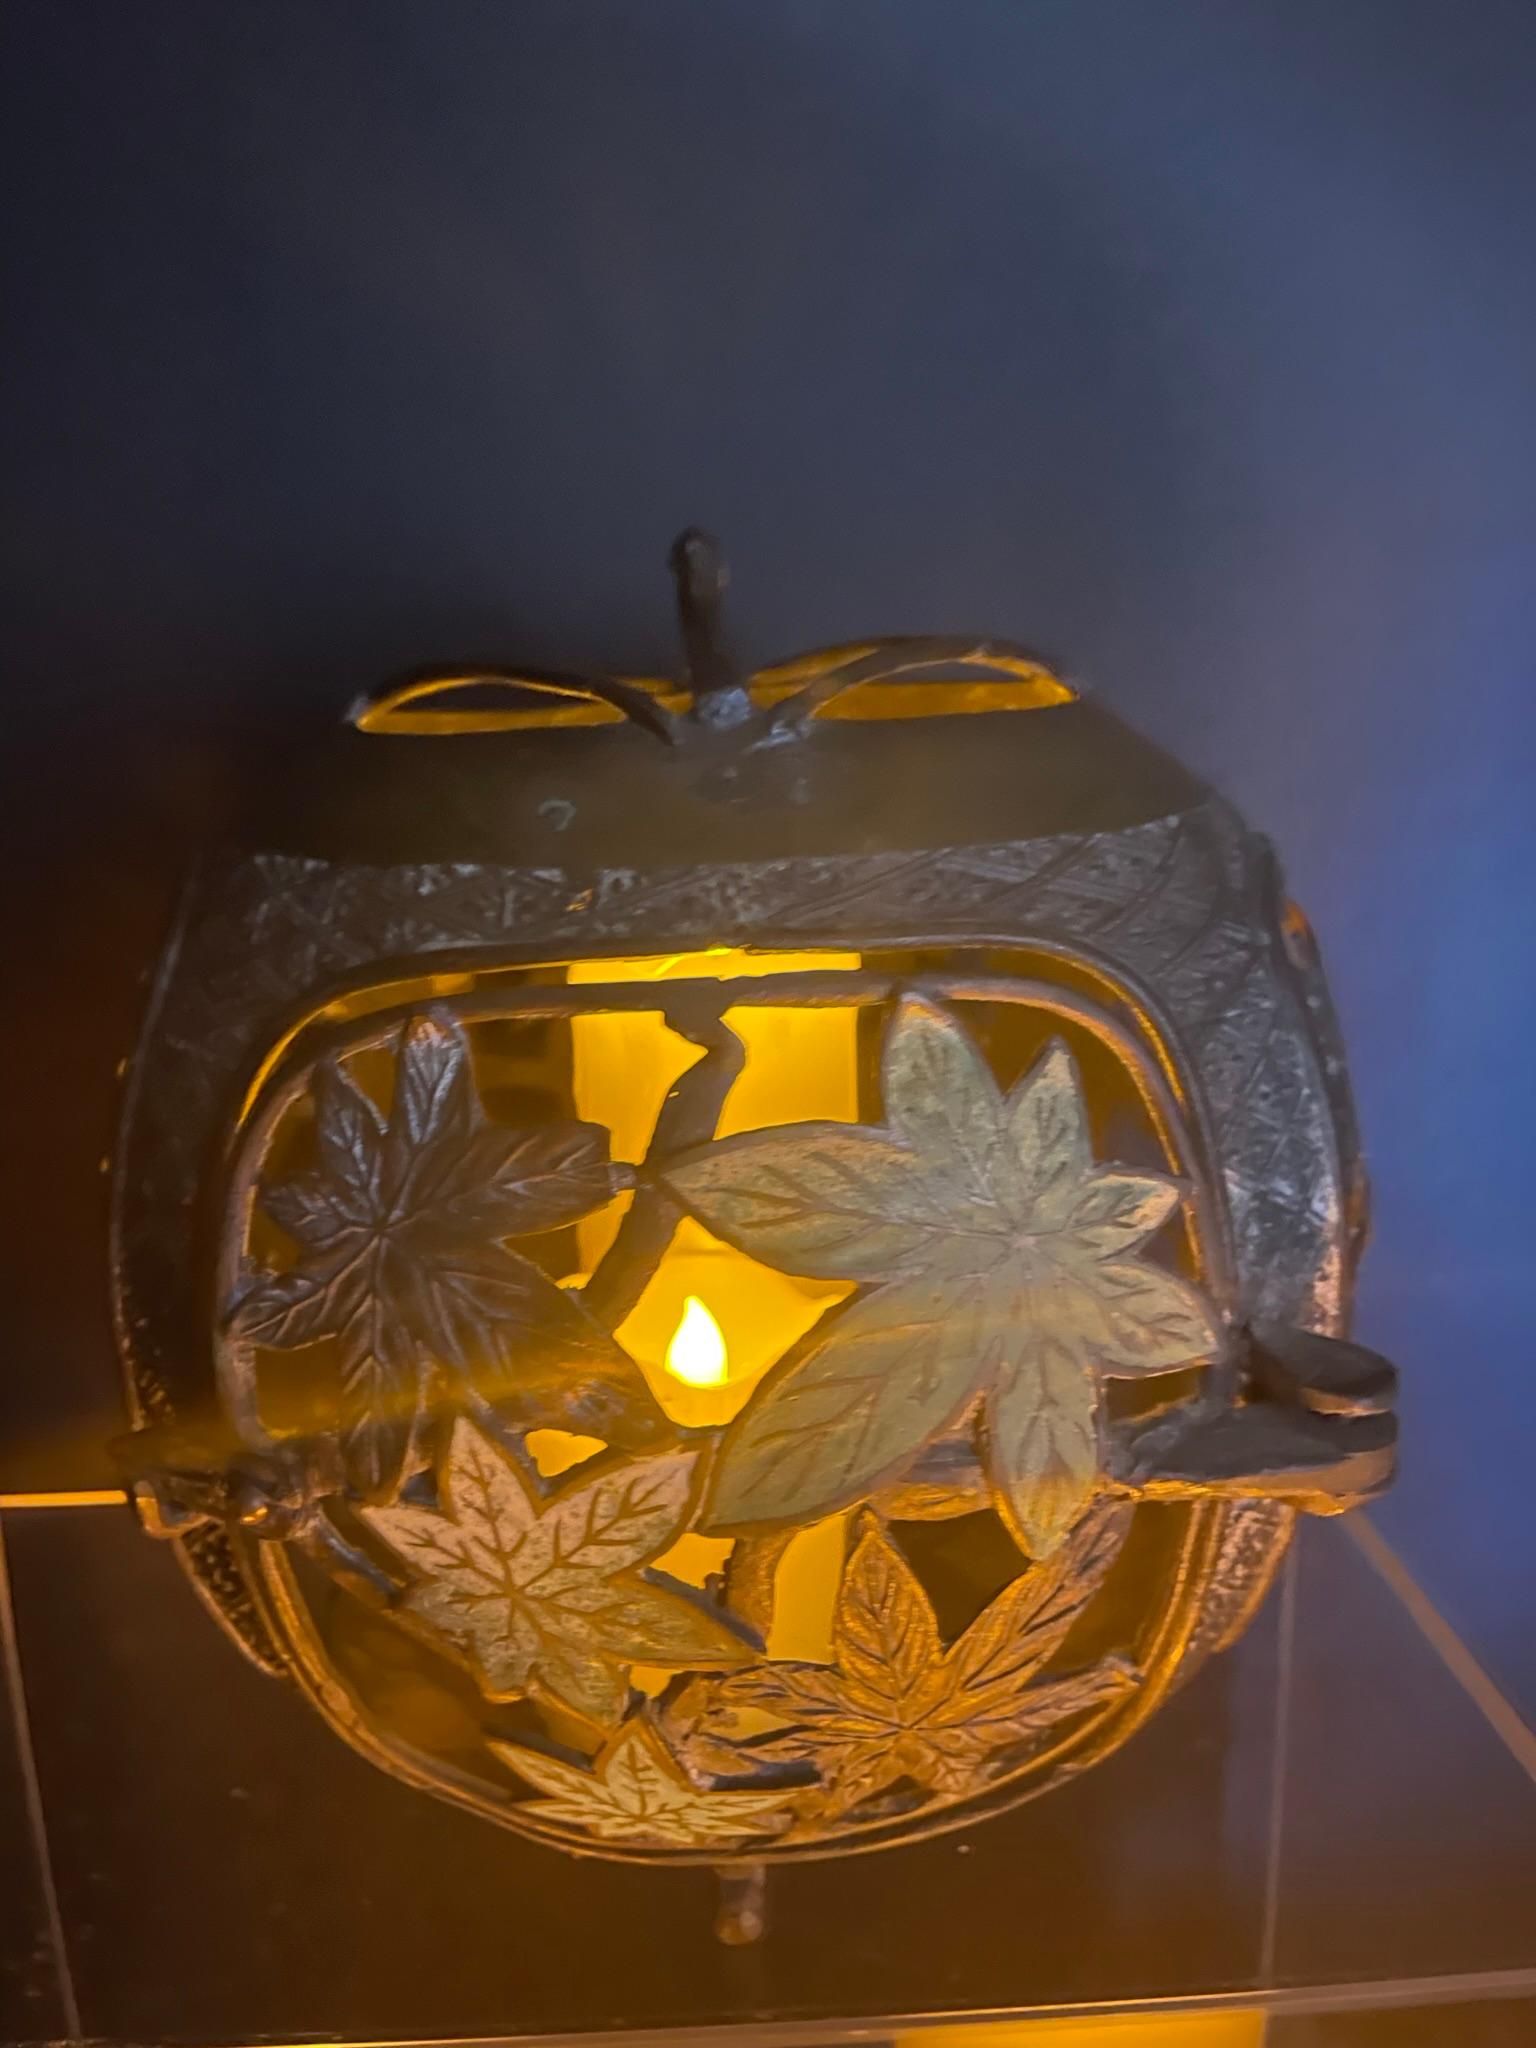 Japan Antique Champleve Maple Leaf Bronze Orb Lantern, Brilliant Colors 1